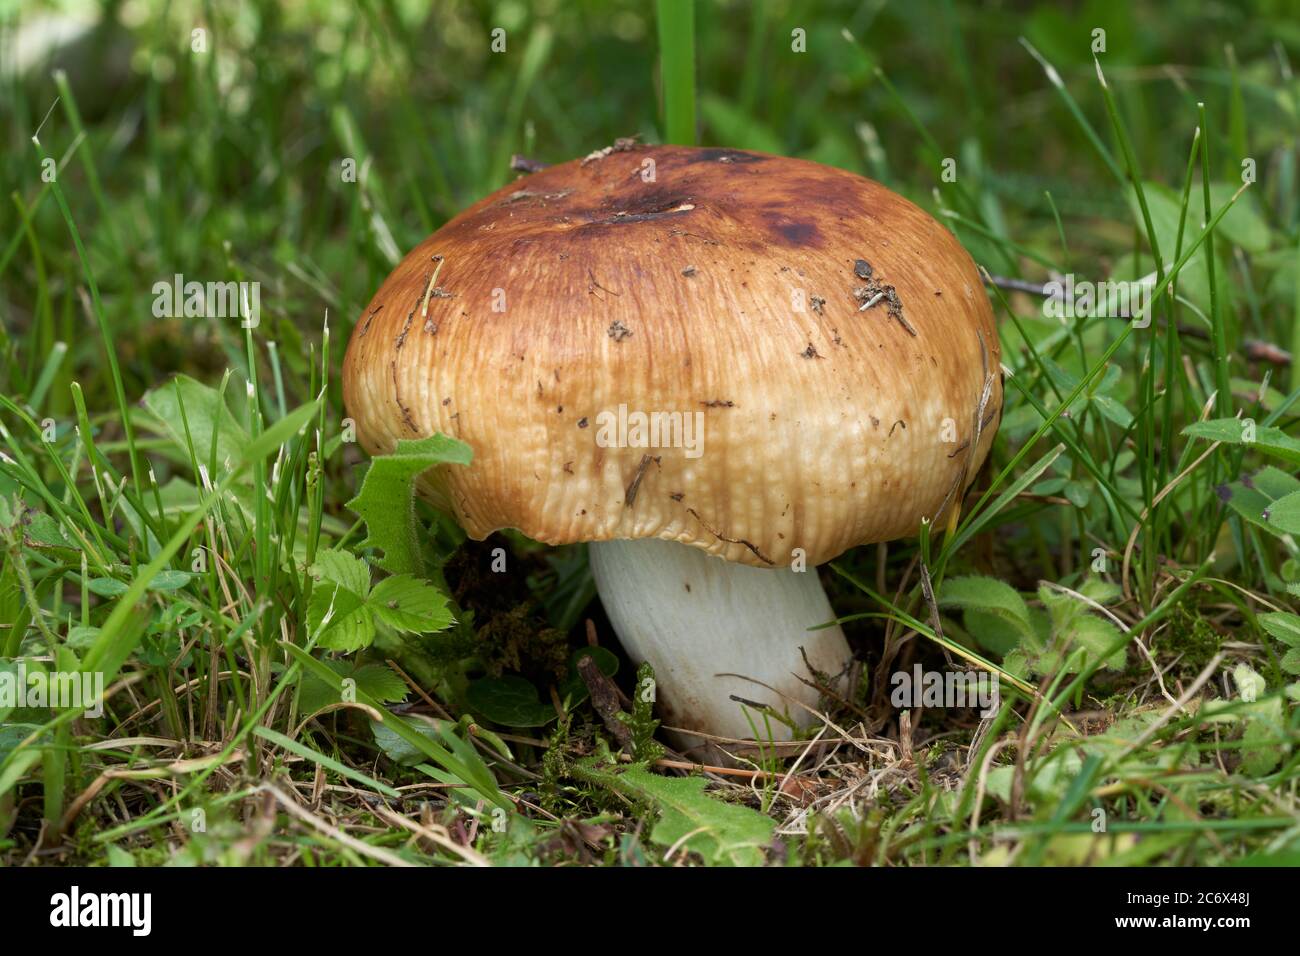 Ungenießbarer Pilz Russula fötens in der Waldwiese. Bekannt als stinkender Täuschungsruss. Pilz mit honiggelber Tasse und weißem Stiel im Gras. Stockfoto